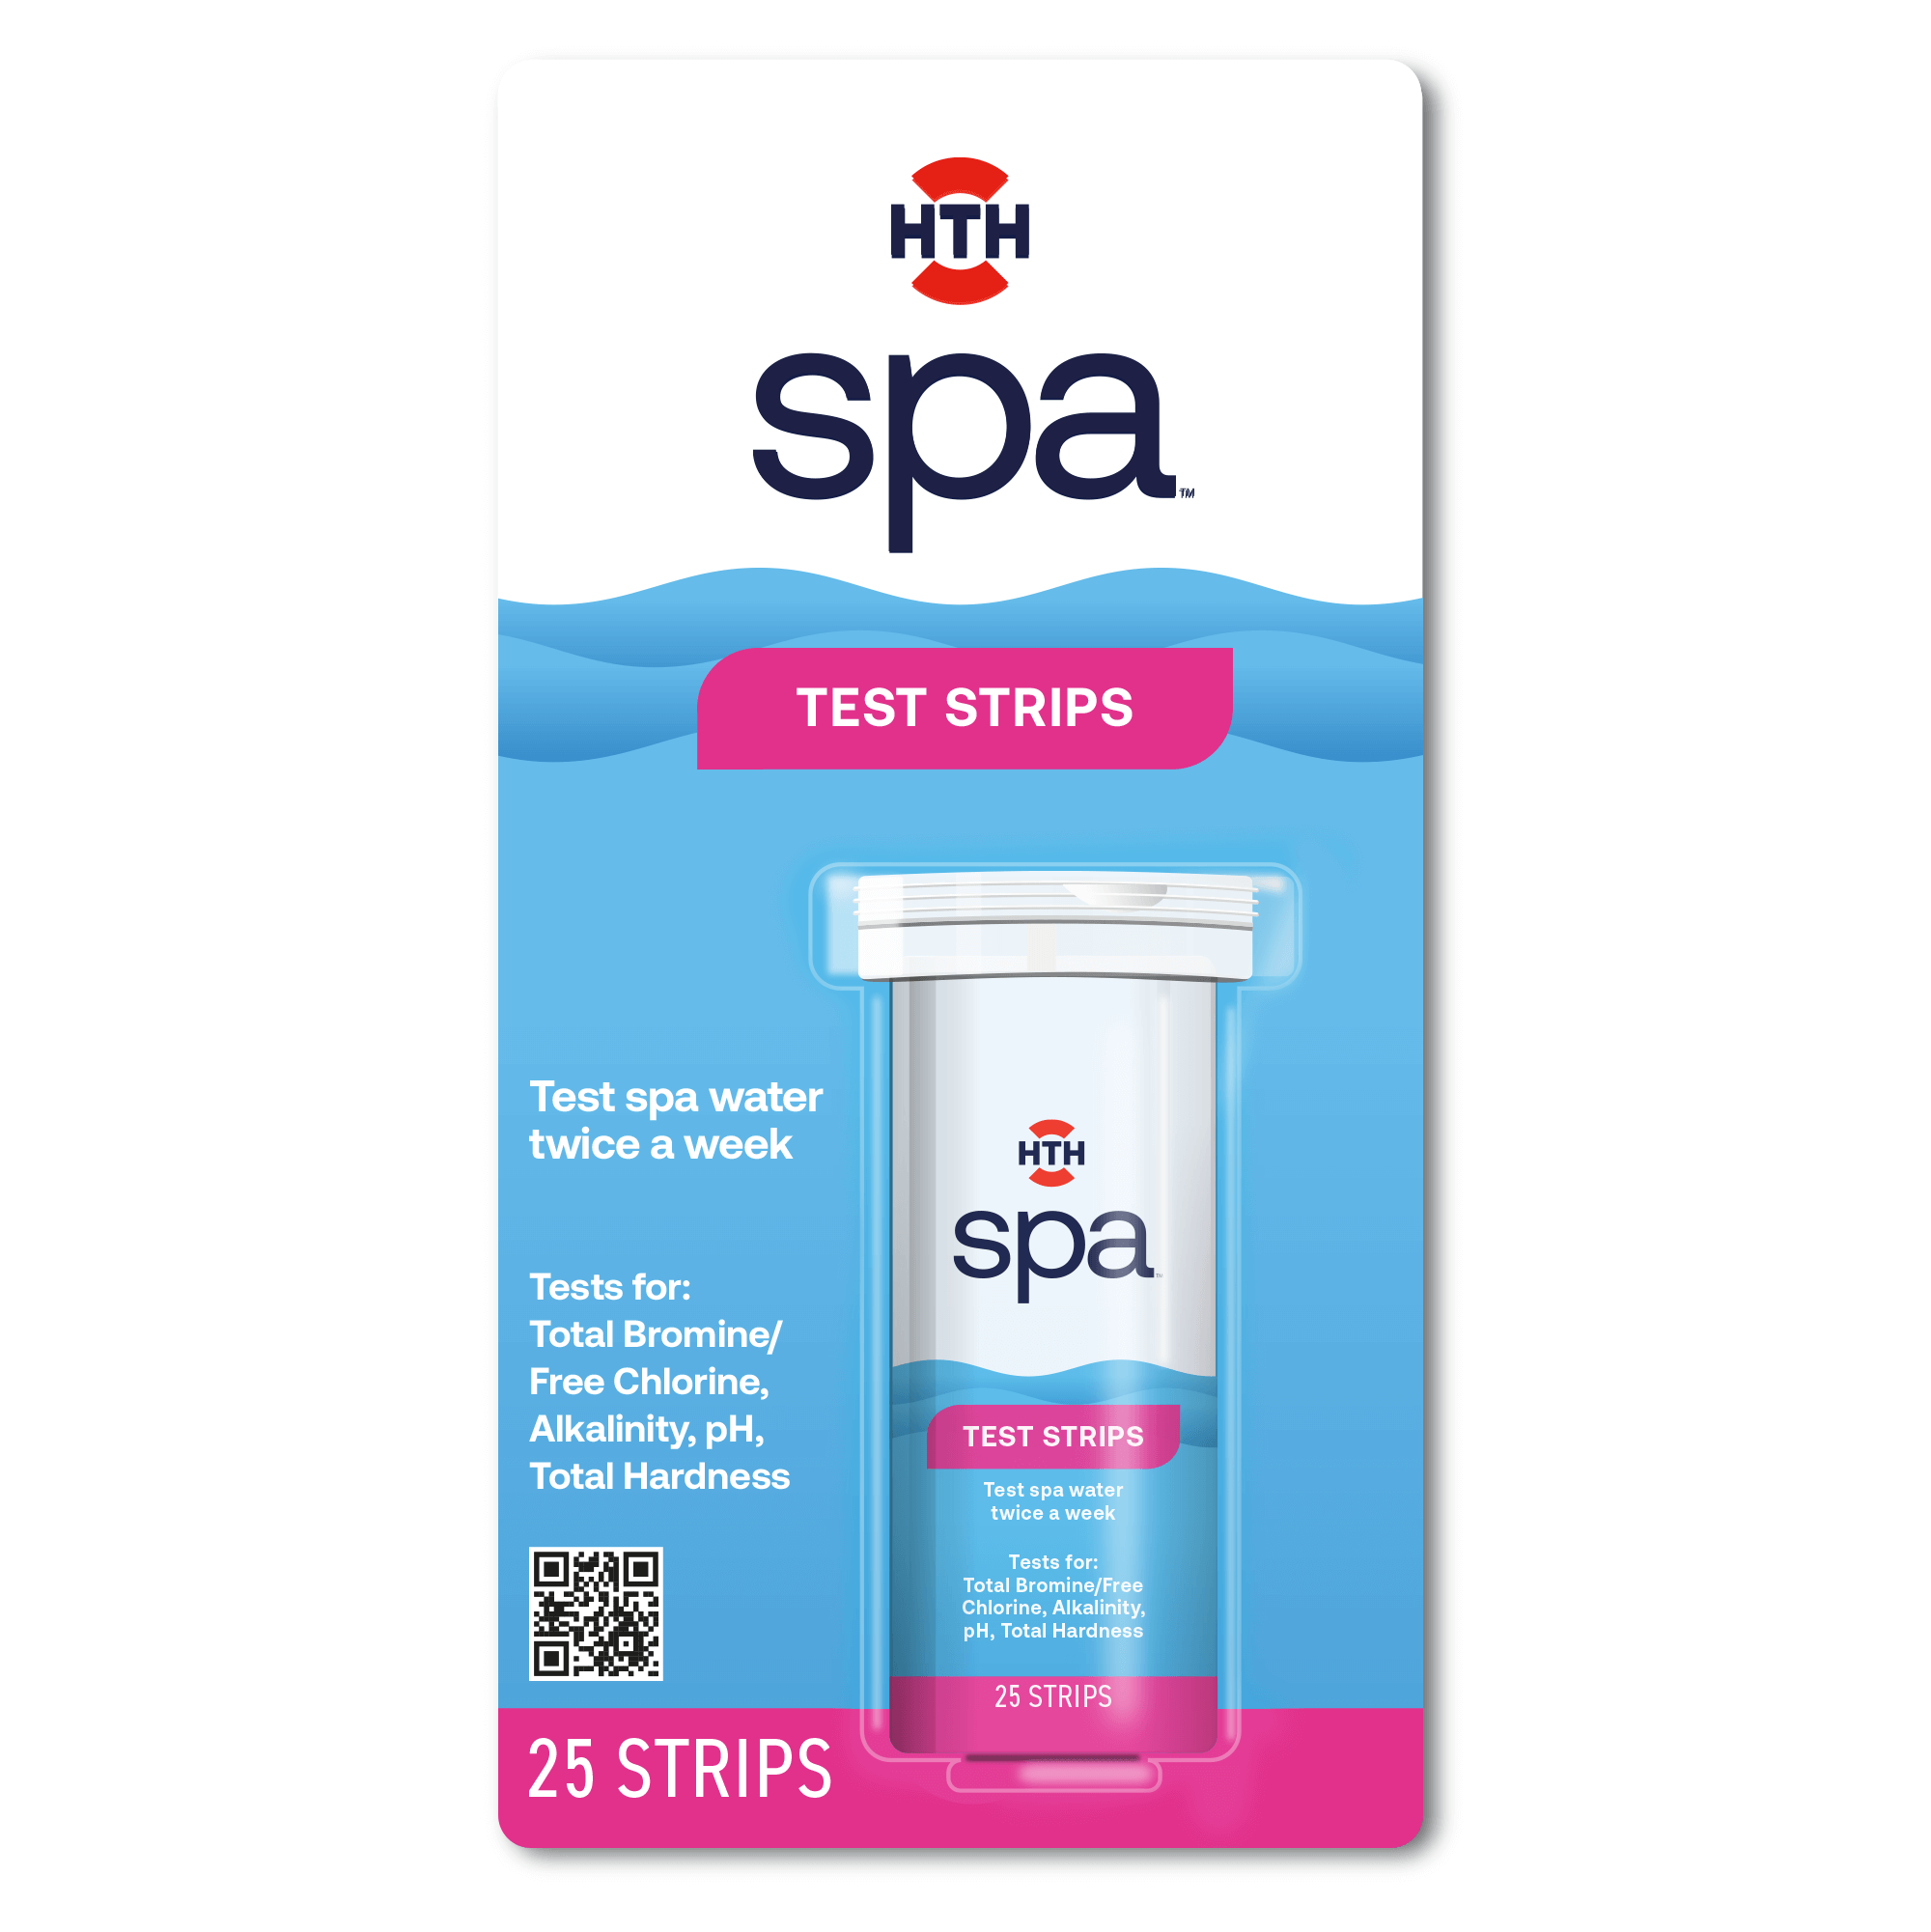 HTH Spa 86227 pH Increaser Balancing Spa and Hot Tub Care, 2 lbs